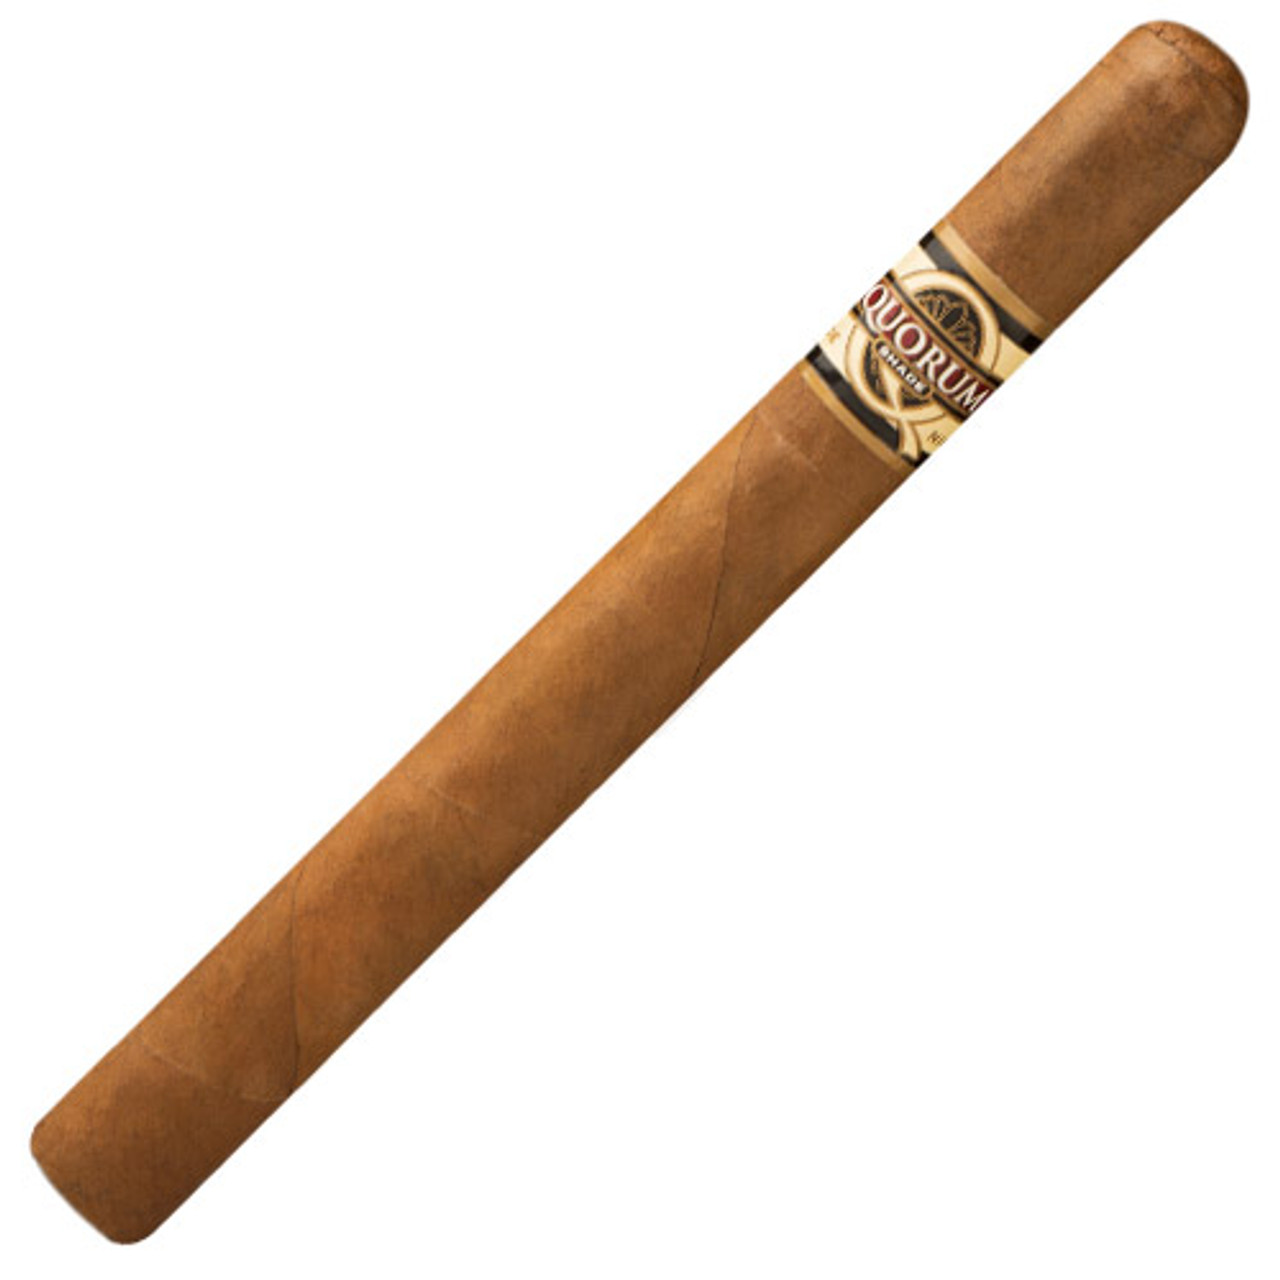 Quorum Shade Churchill Cigars - 7 x 48 Single